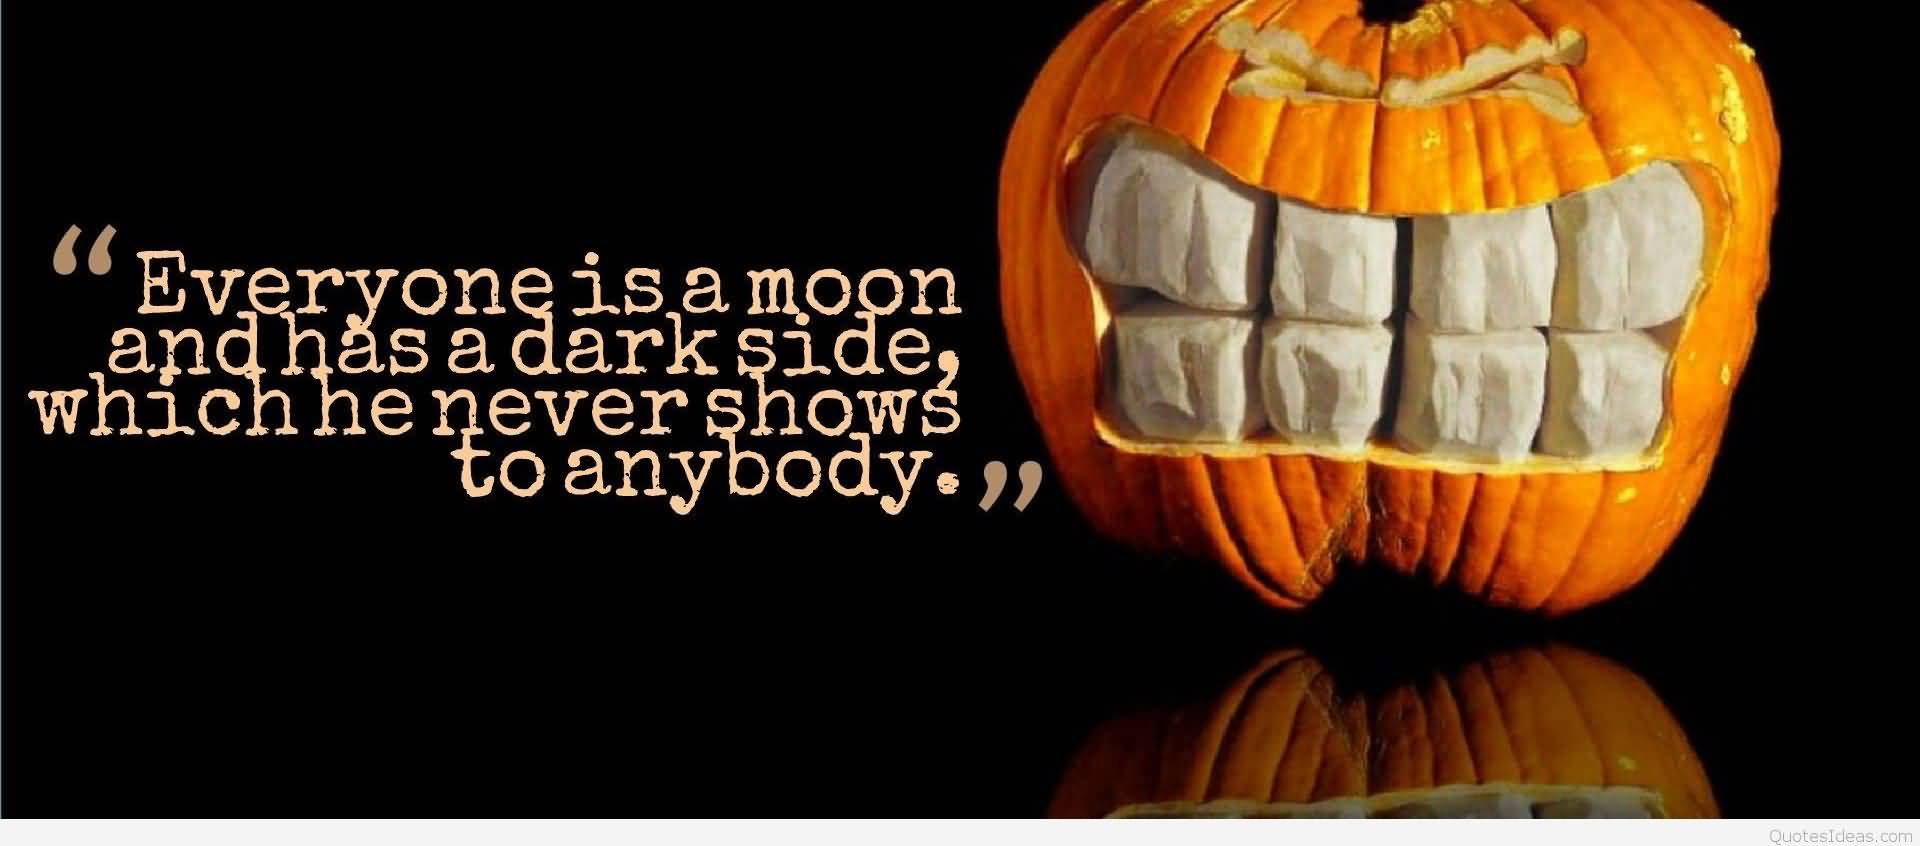 Pumpkin Carving Quotes Meme Image 15